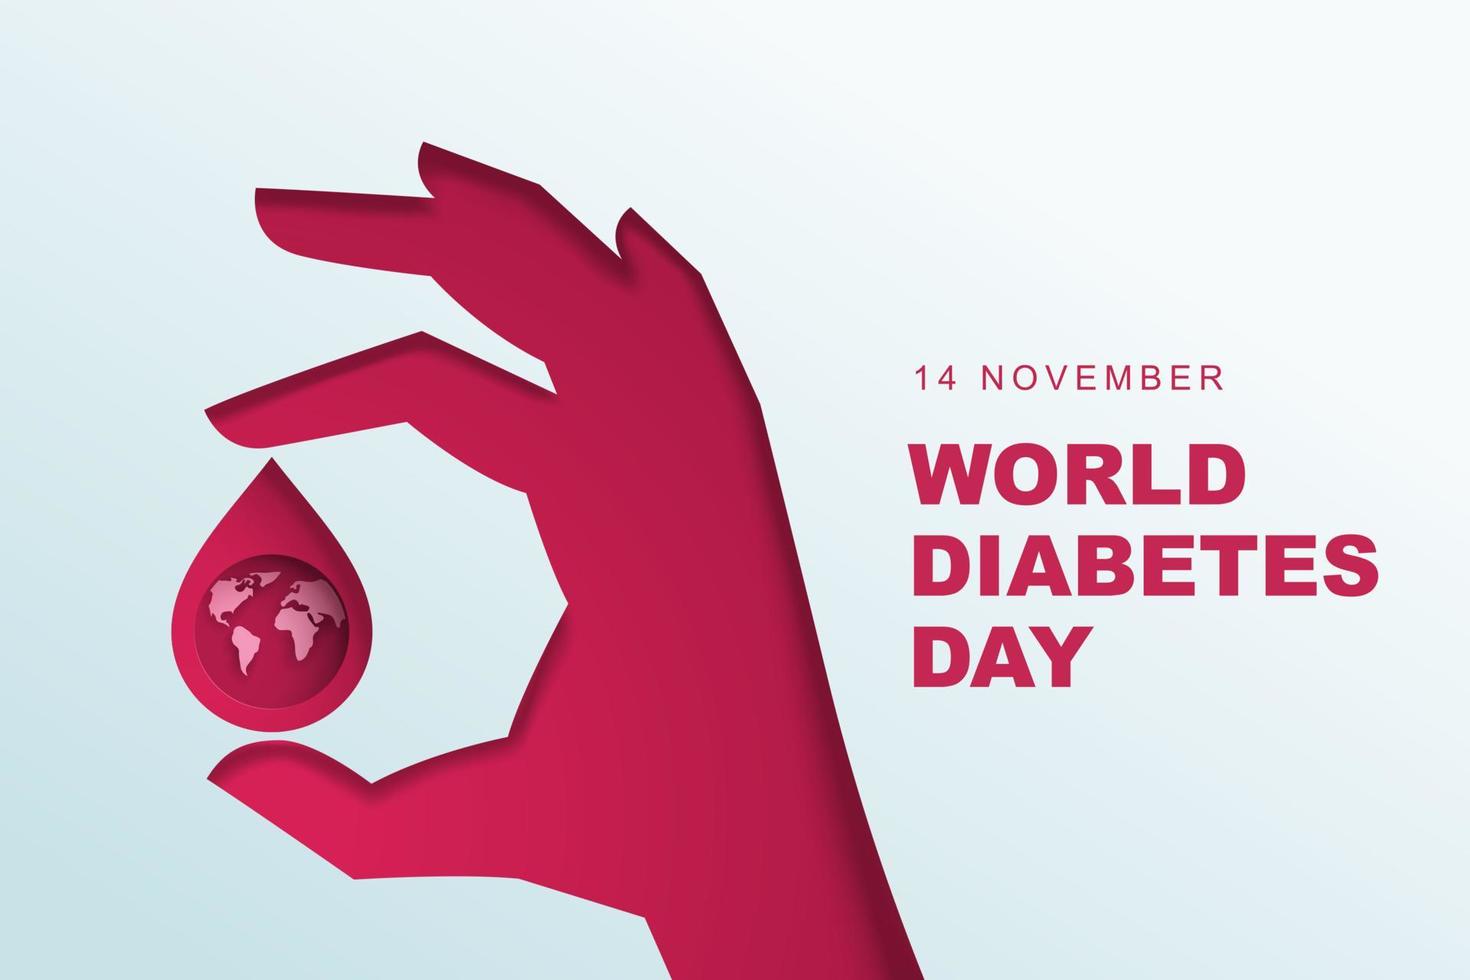 illustrazione vettoriale della giornata mondiale del diabete